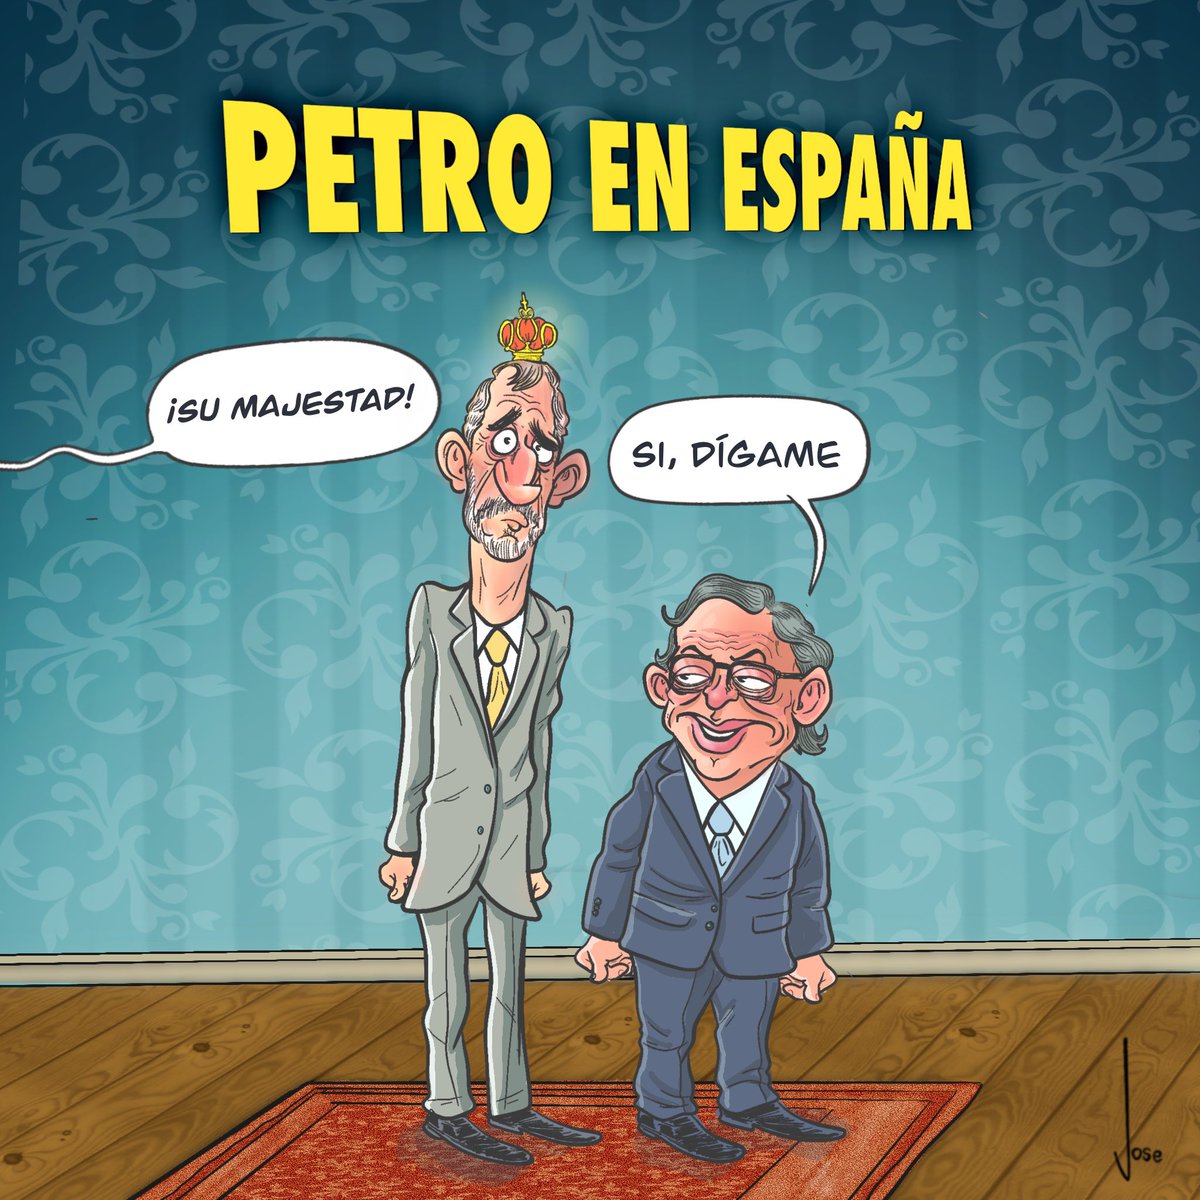 Jose caricaturista (@josecaricatura) on Twitter photo 2023-05-03 19:21:15